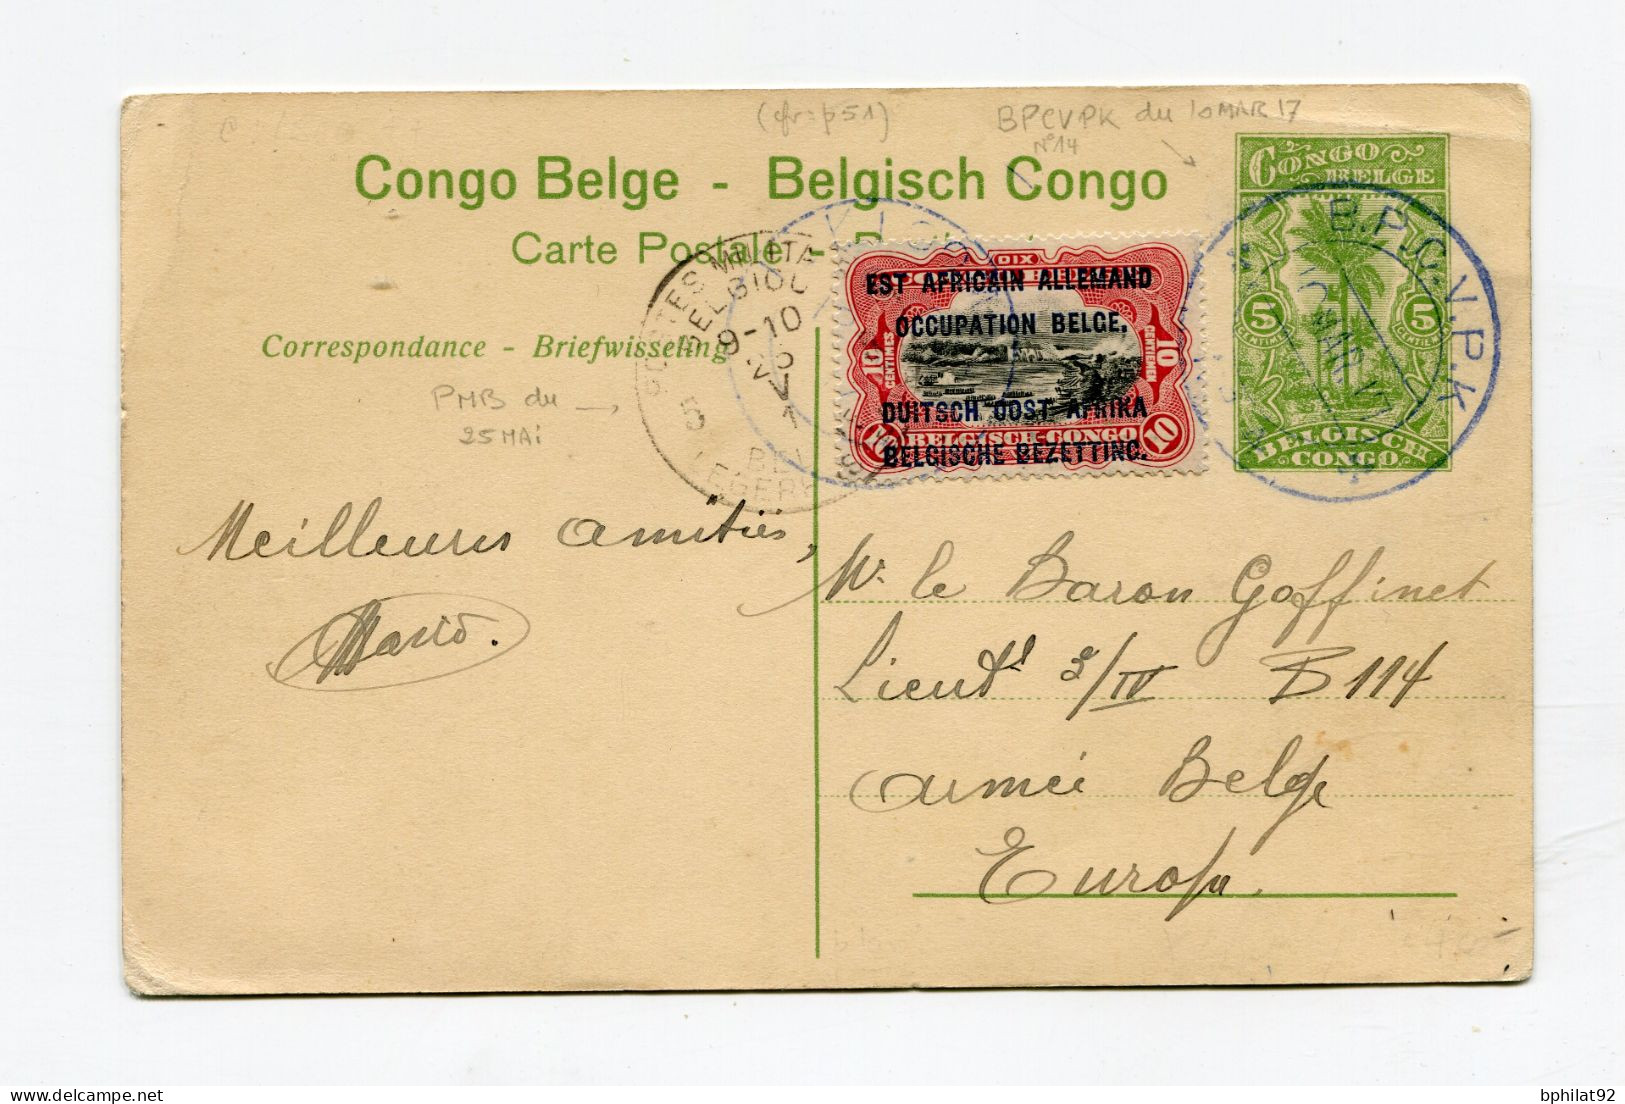 !!! ENTIER POSTAL DU CONGO BELGE, CACHET BPCVPK DE 1917 - Brieven En Documenten